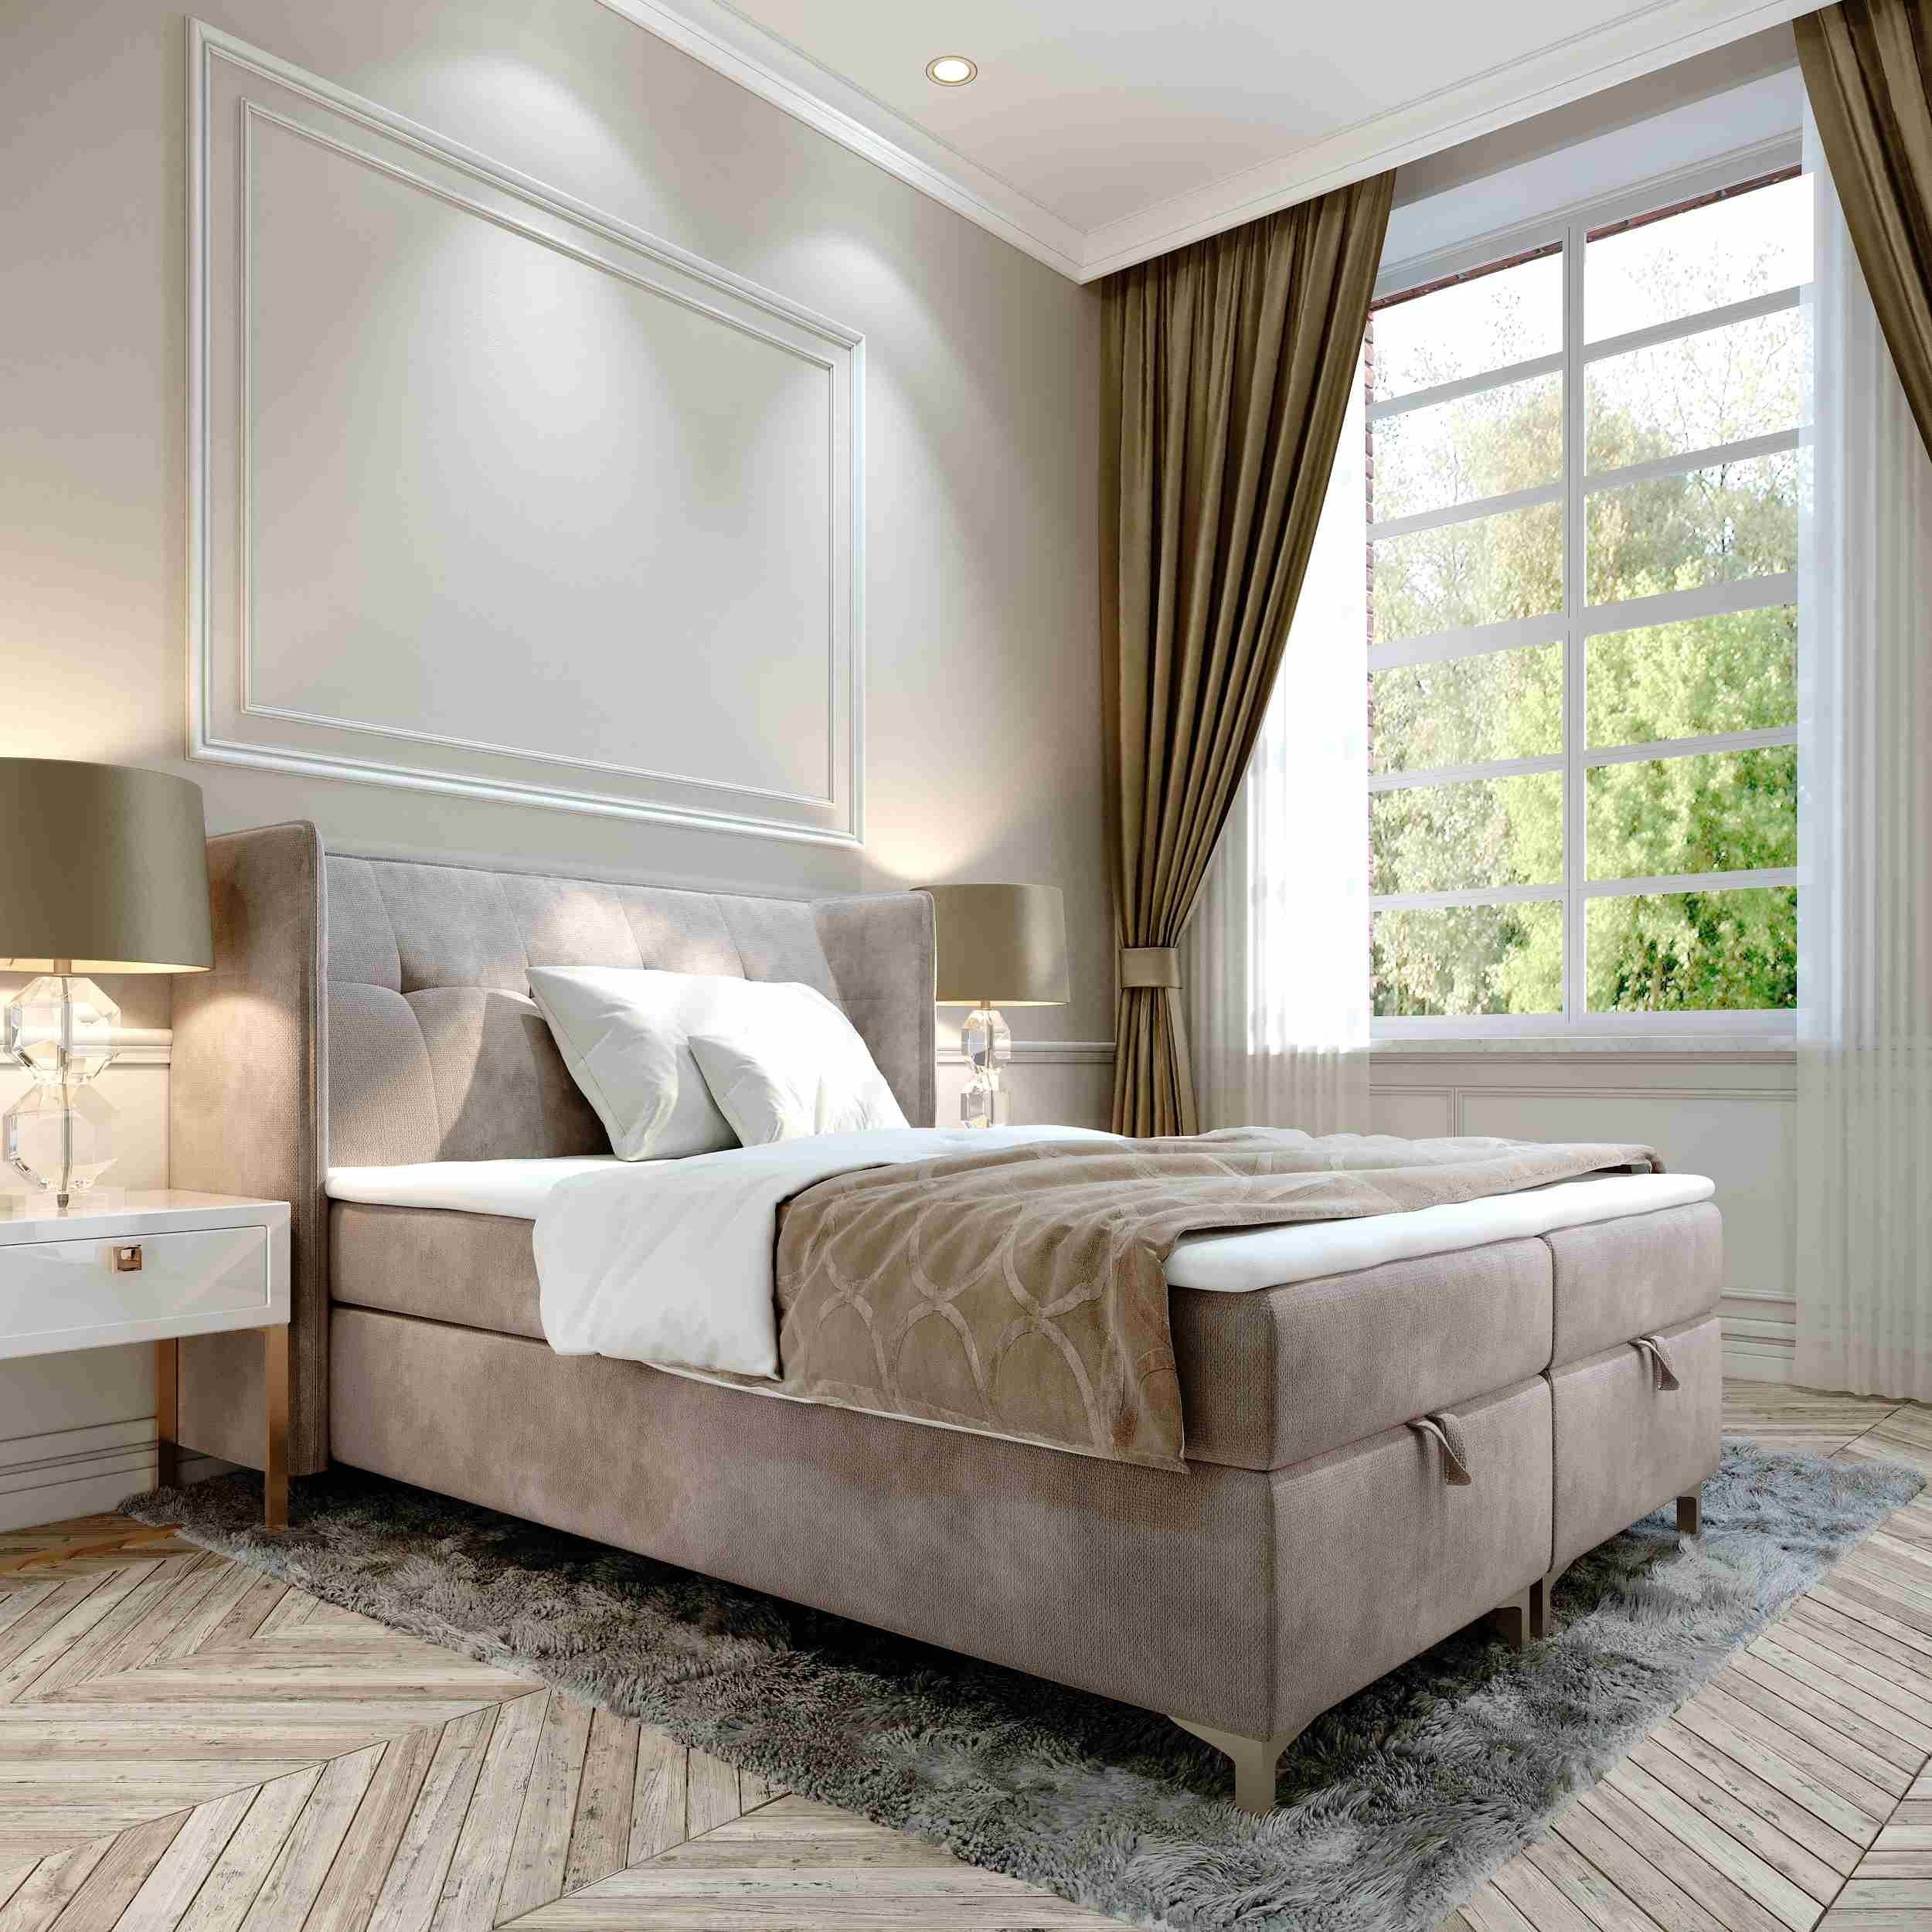 Furnix Polsterbett TOLIE 140,160, 180, 200x 200 cm Bett mit Bettkasten und Topper, wahlweise in 5 Größen und 7 Farben Beige